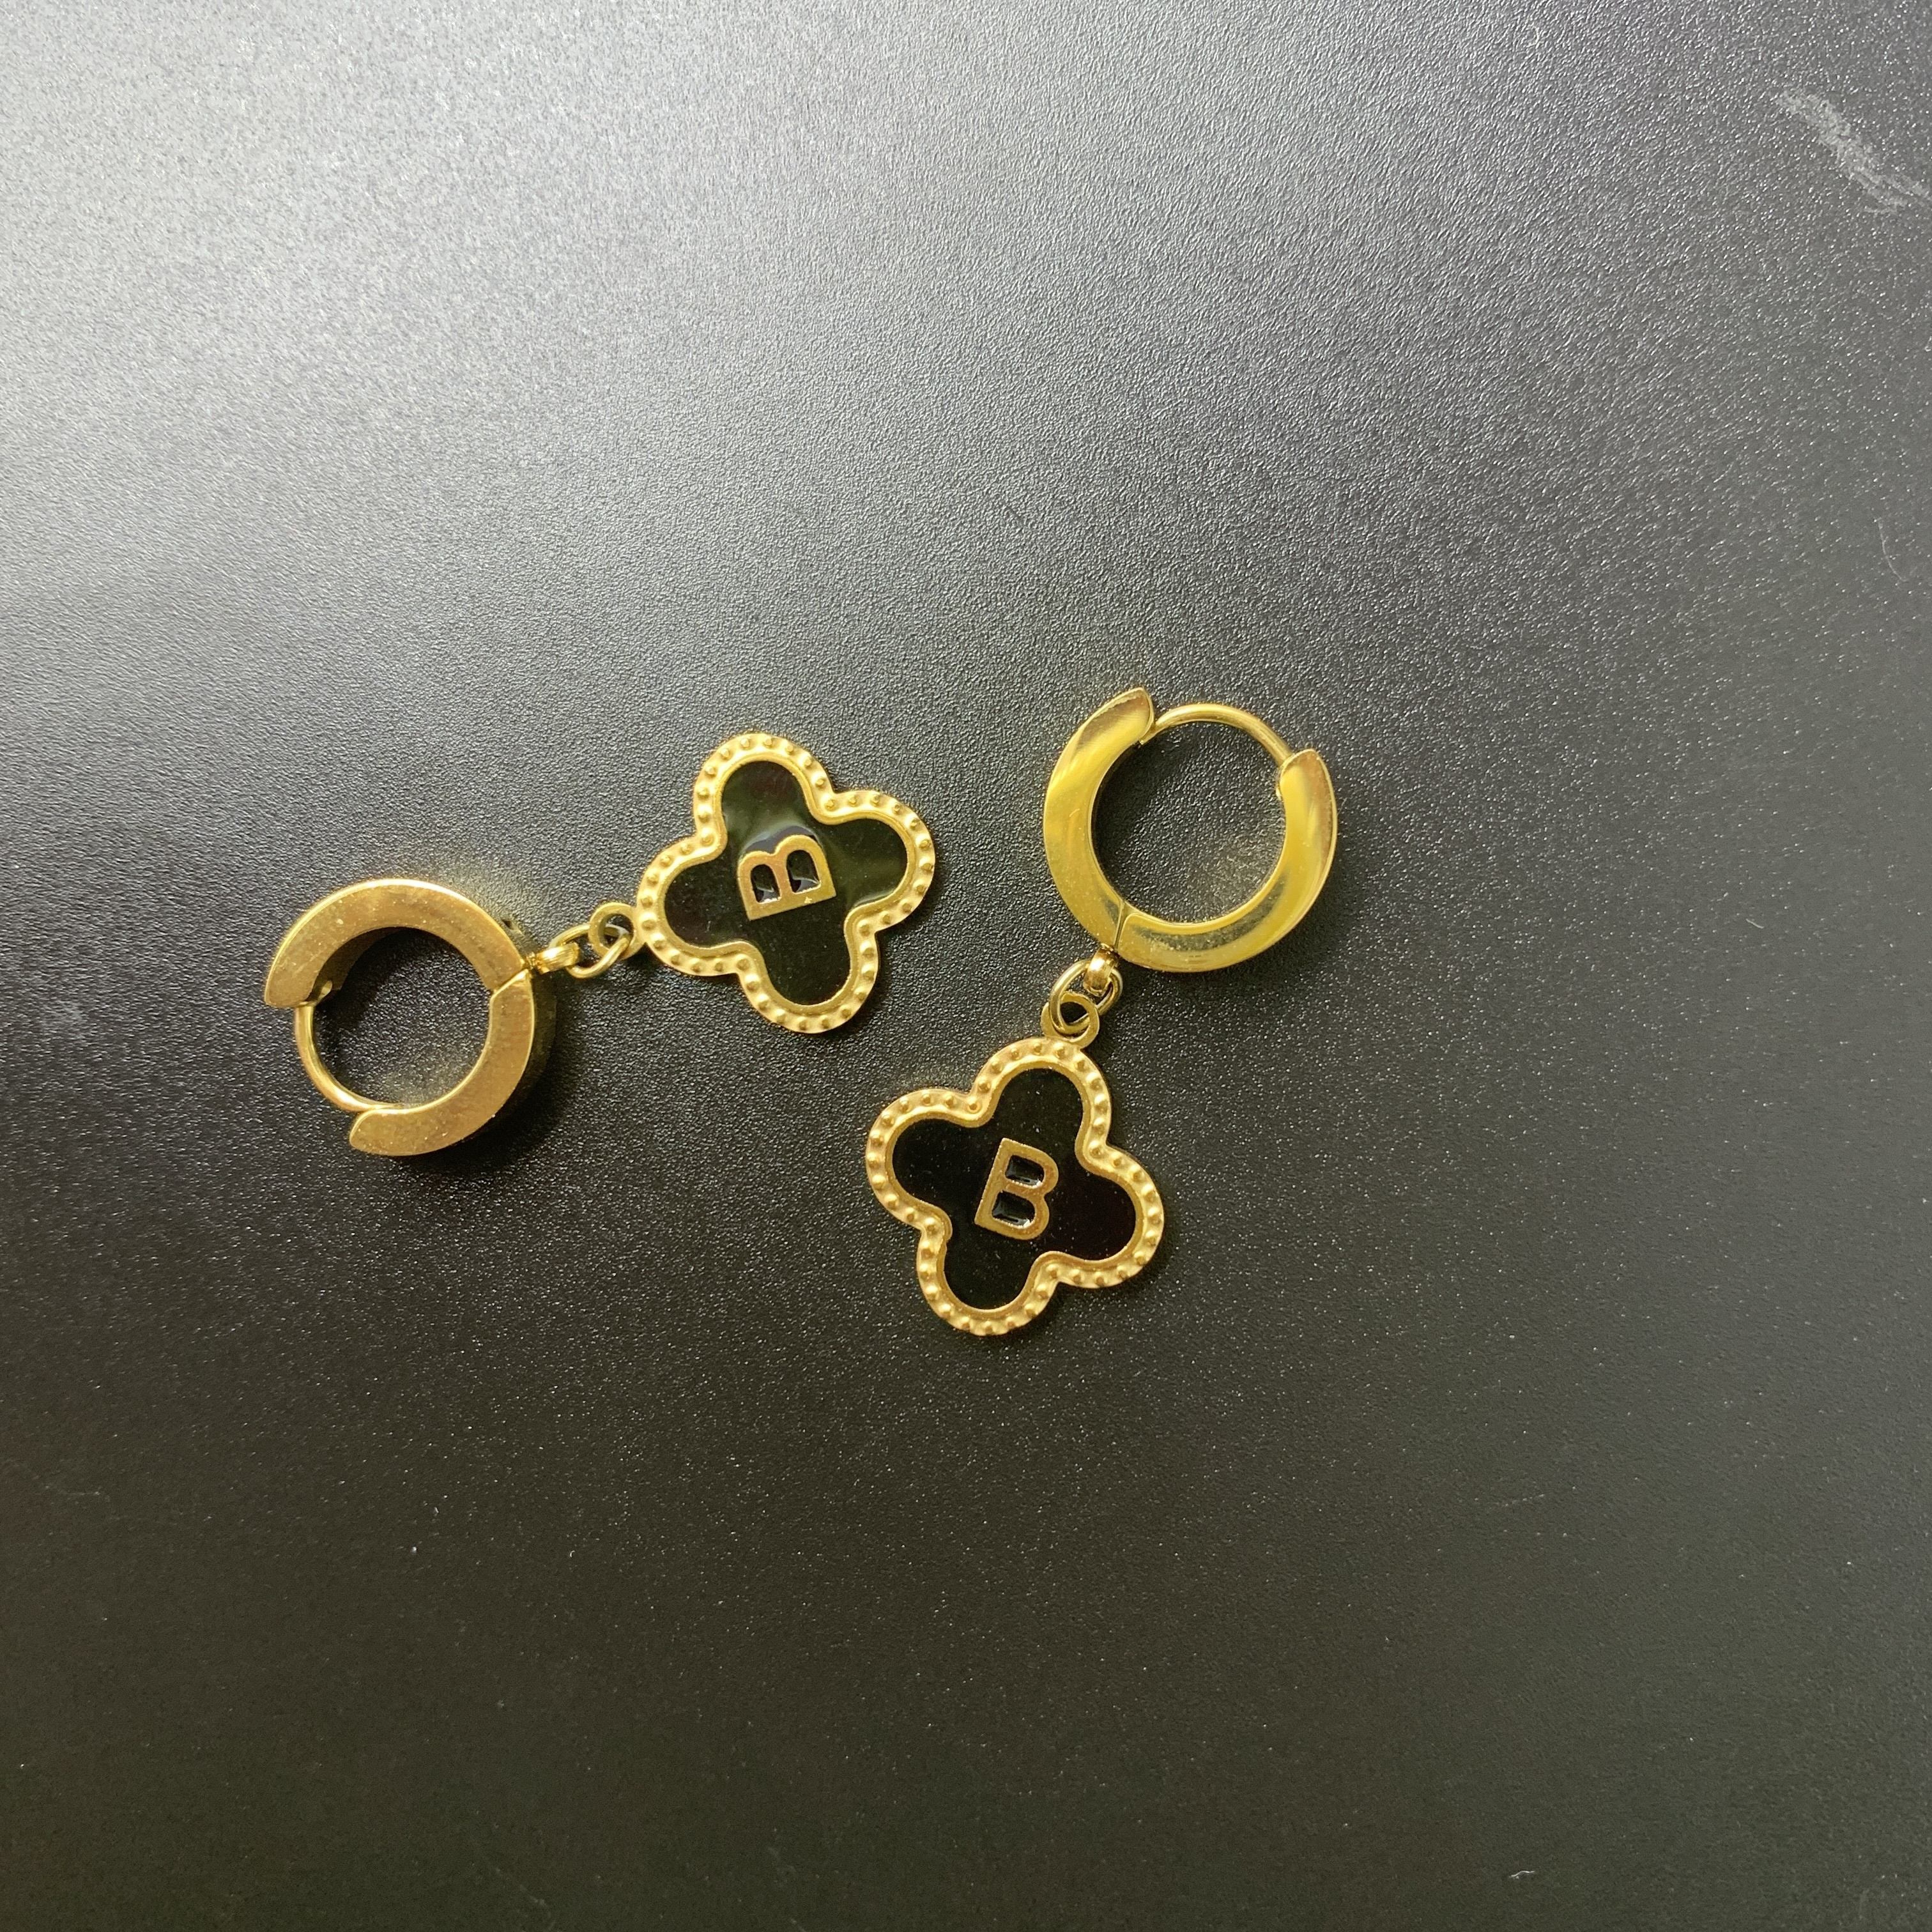 Lucky Four Leaf Grass Letter Earrings, Letter N Golden Stainless Steel  Versatile Simple Earrings For Women - Temu United Arab Emirates